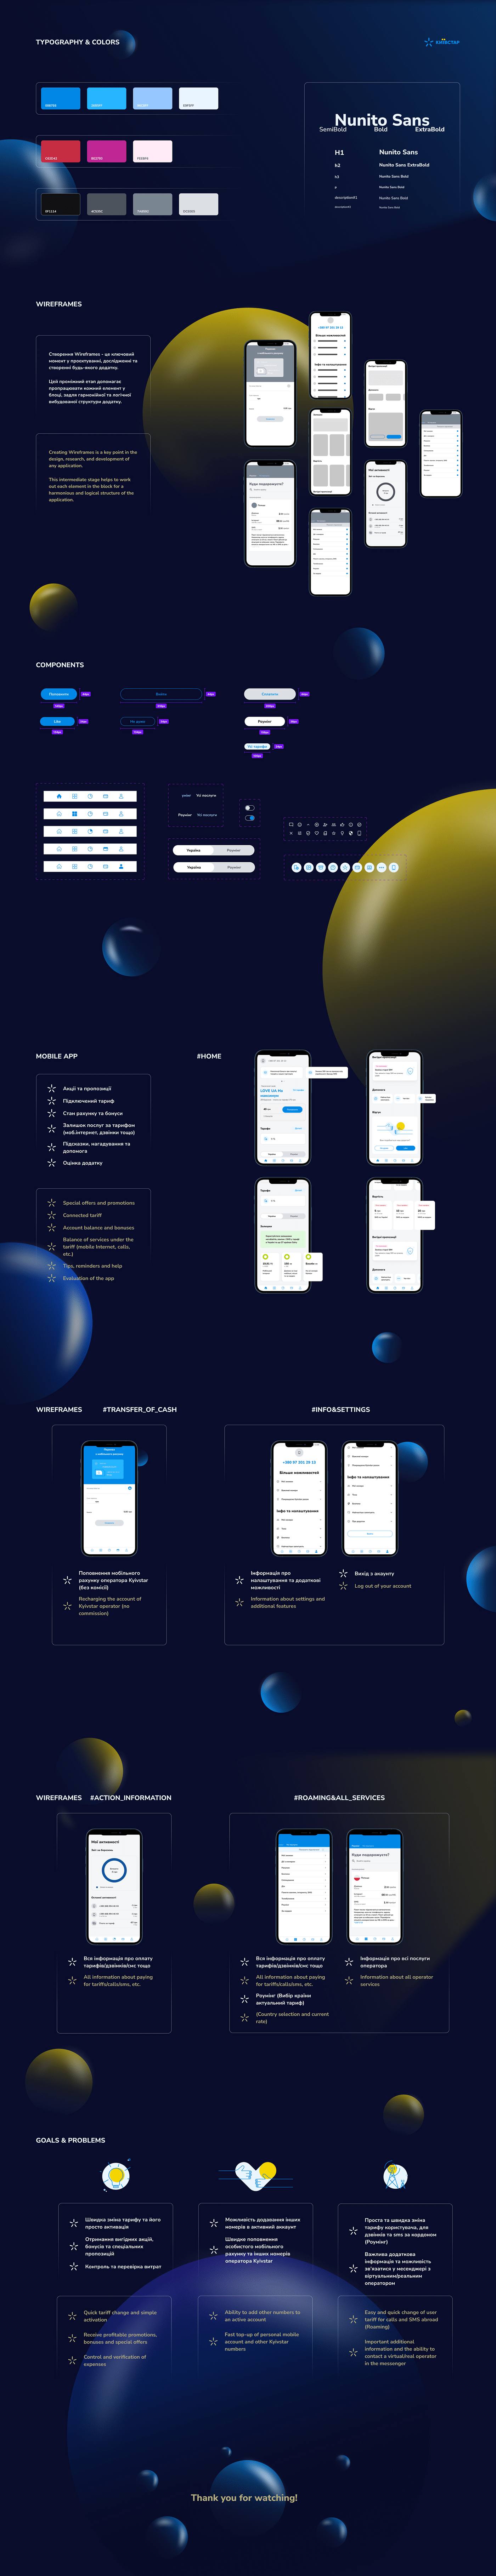 app design application Figma mobile mobile operator UI UI/UX ukraine ux prototype